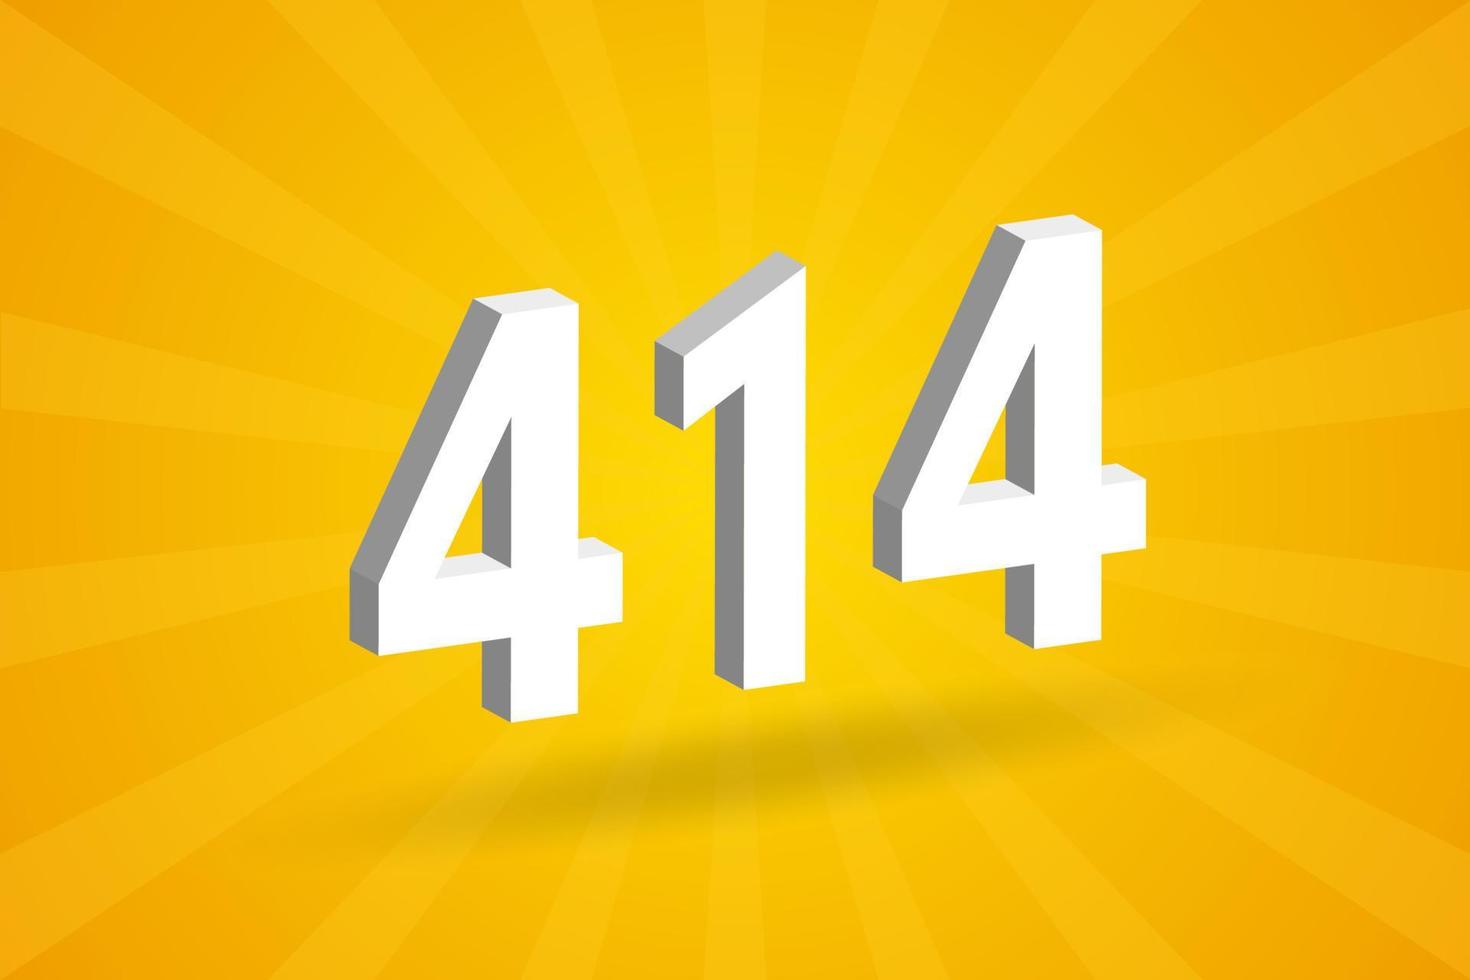 3d 414 numero font alfabeto. bianca 3d numero 414 con giallo sfondo vettore